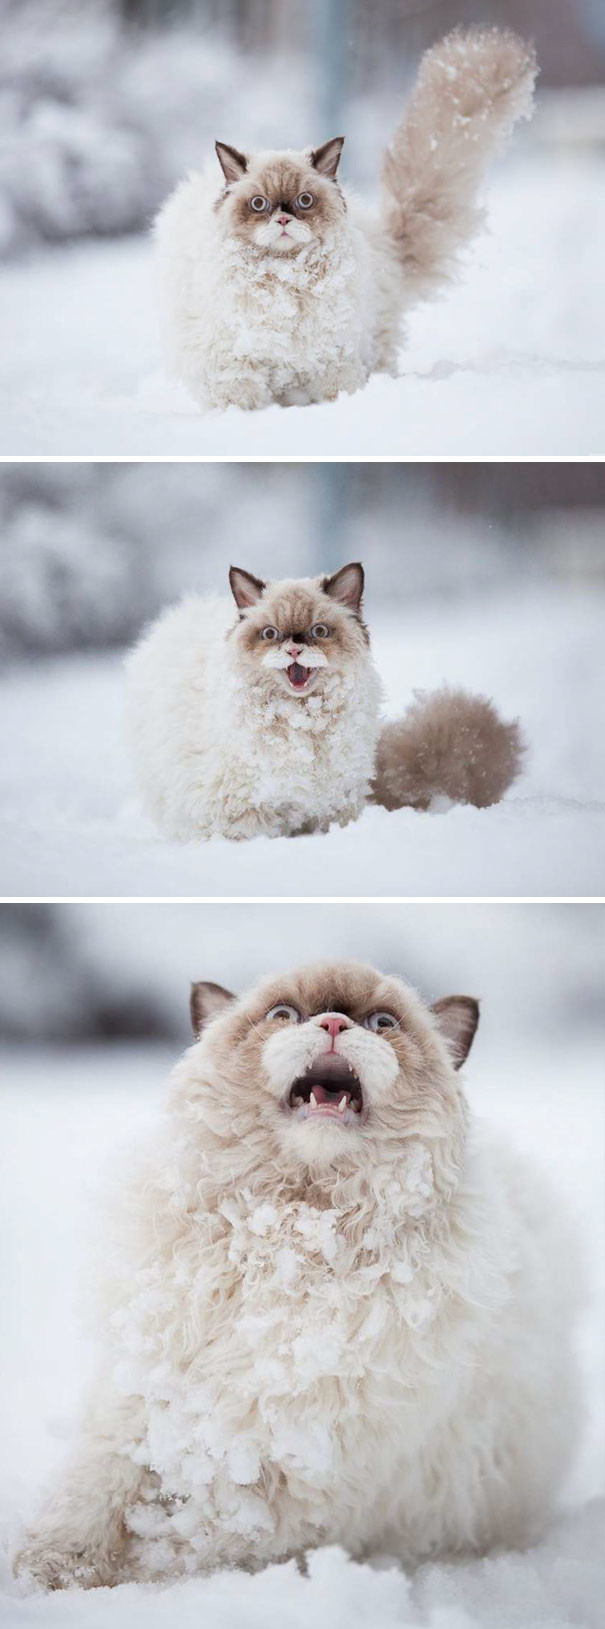 Премьера сезона - "Кот впервые видит снег". Какая выразительная мимика!